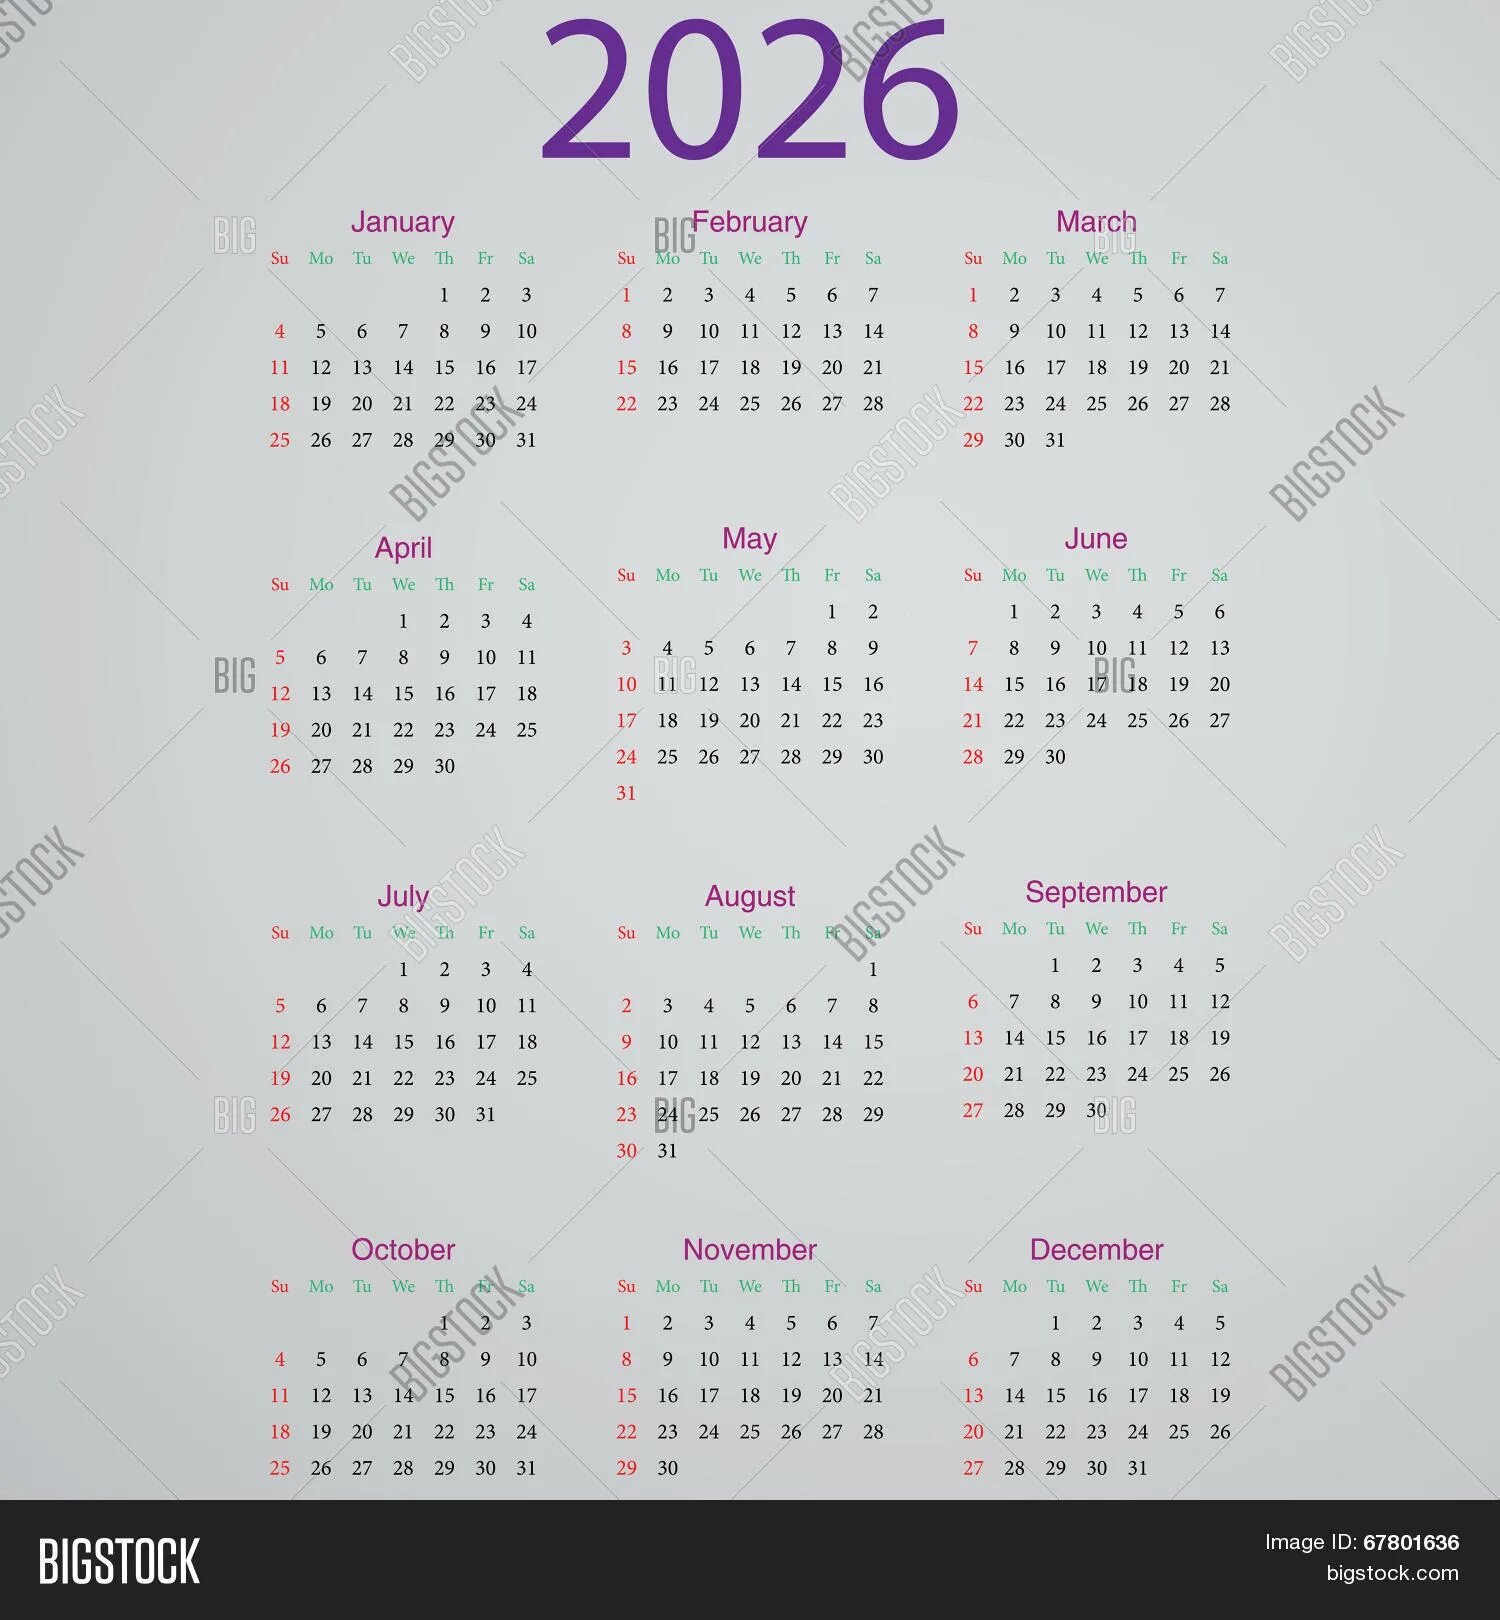 Календарь 2033. Календарики на 2026 год. Календарь 2037 года. Календарь календарь на 2026 год. Календарь 2043 года.